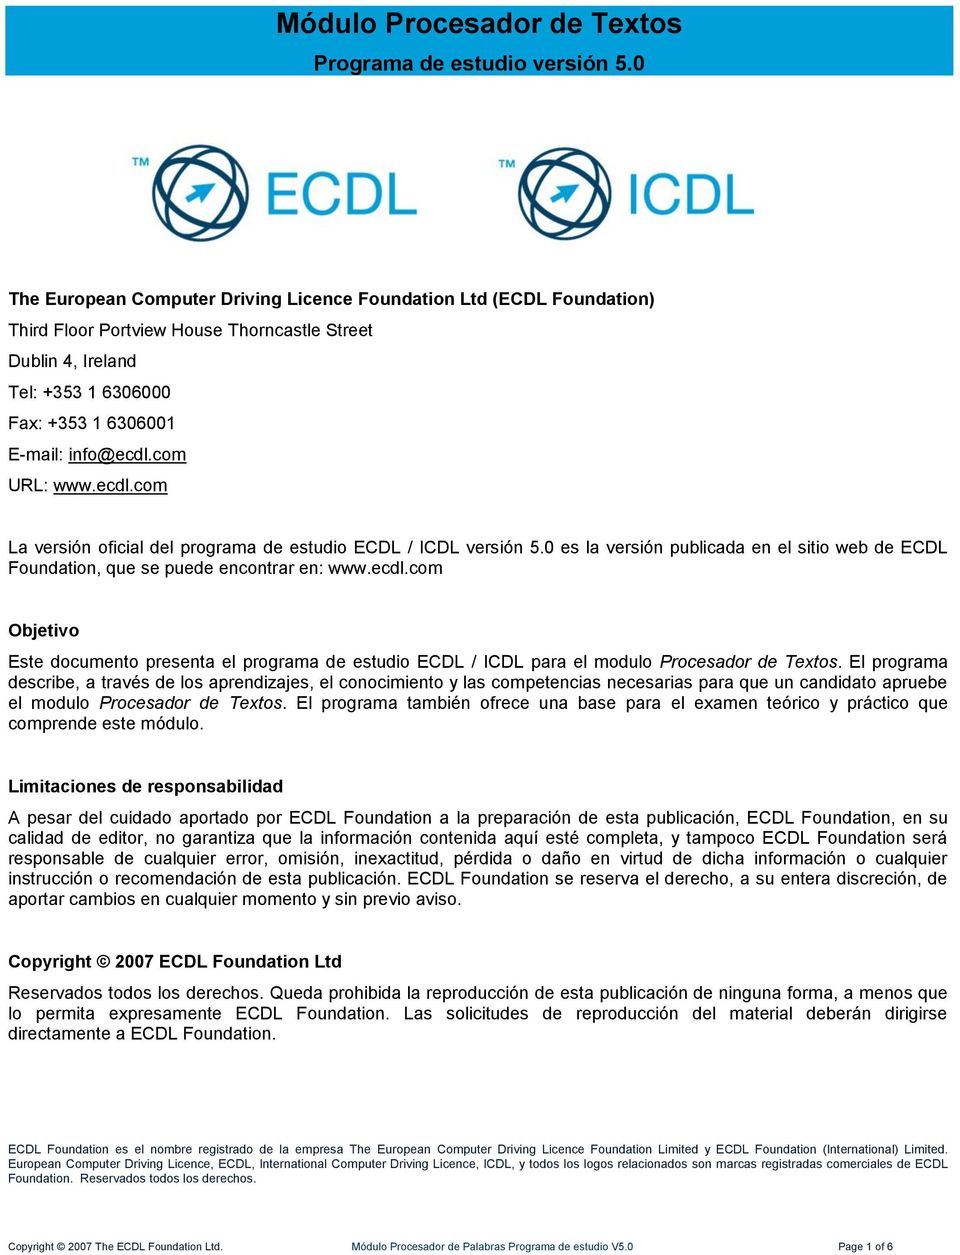 com URL: www.ecdl.com La versión oficial del programa de estudio ECDL / ICDL versión 5.0 es la versión publicada en el sitio web de ECDL Foundation, que se puede encontrar en: www.ecdl.com Objetivo Este documento presenta el programa de estudio ECDL / ICDL para el modulo Procesador de Textos.